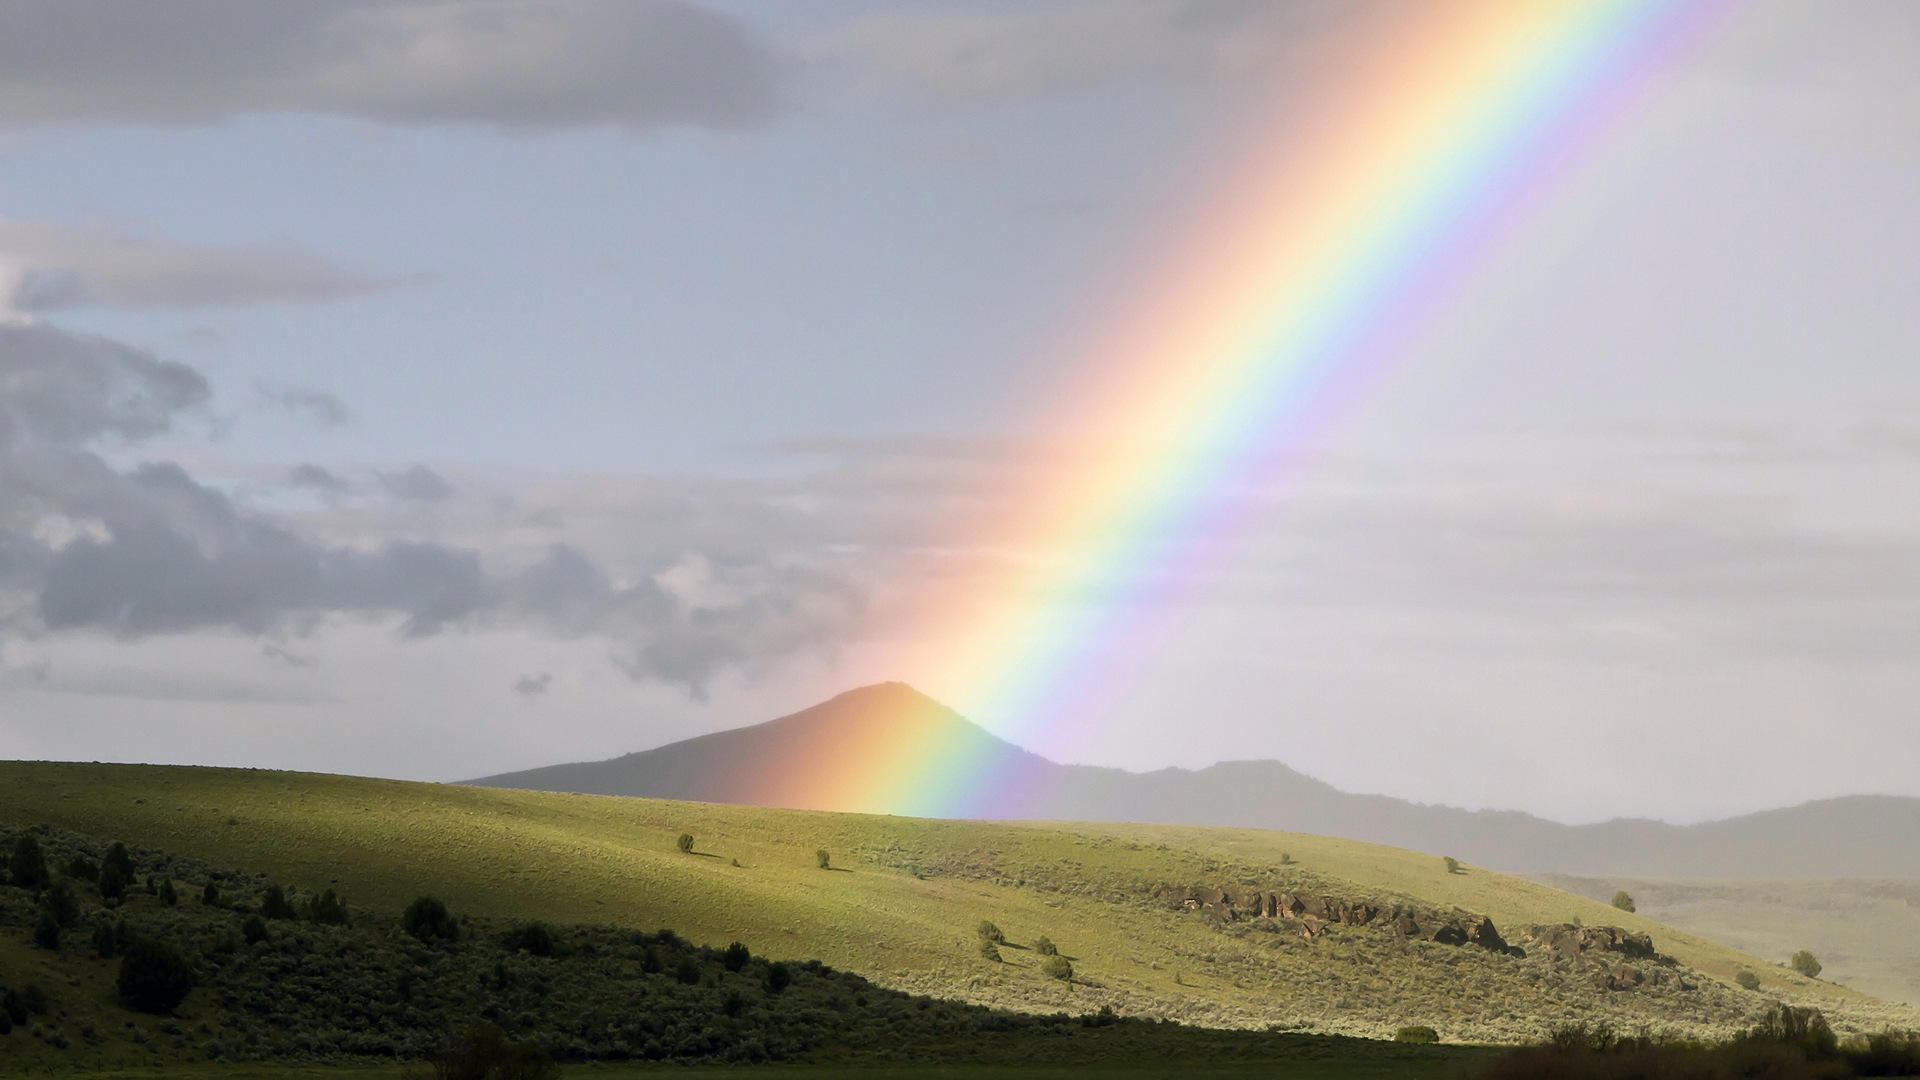 雨上がりに二重の虹が出現！ダブルレインボーは幸運のサイン？ – skyticket 観光ガイド